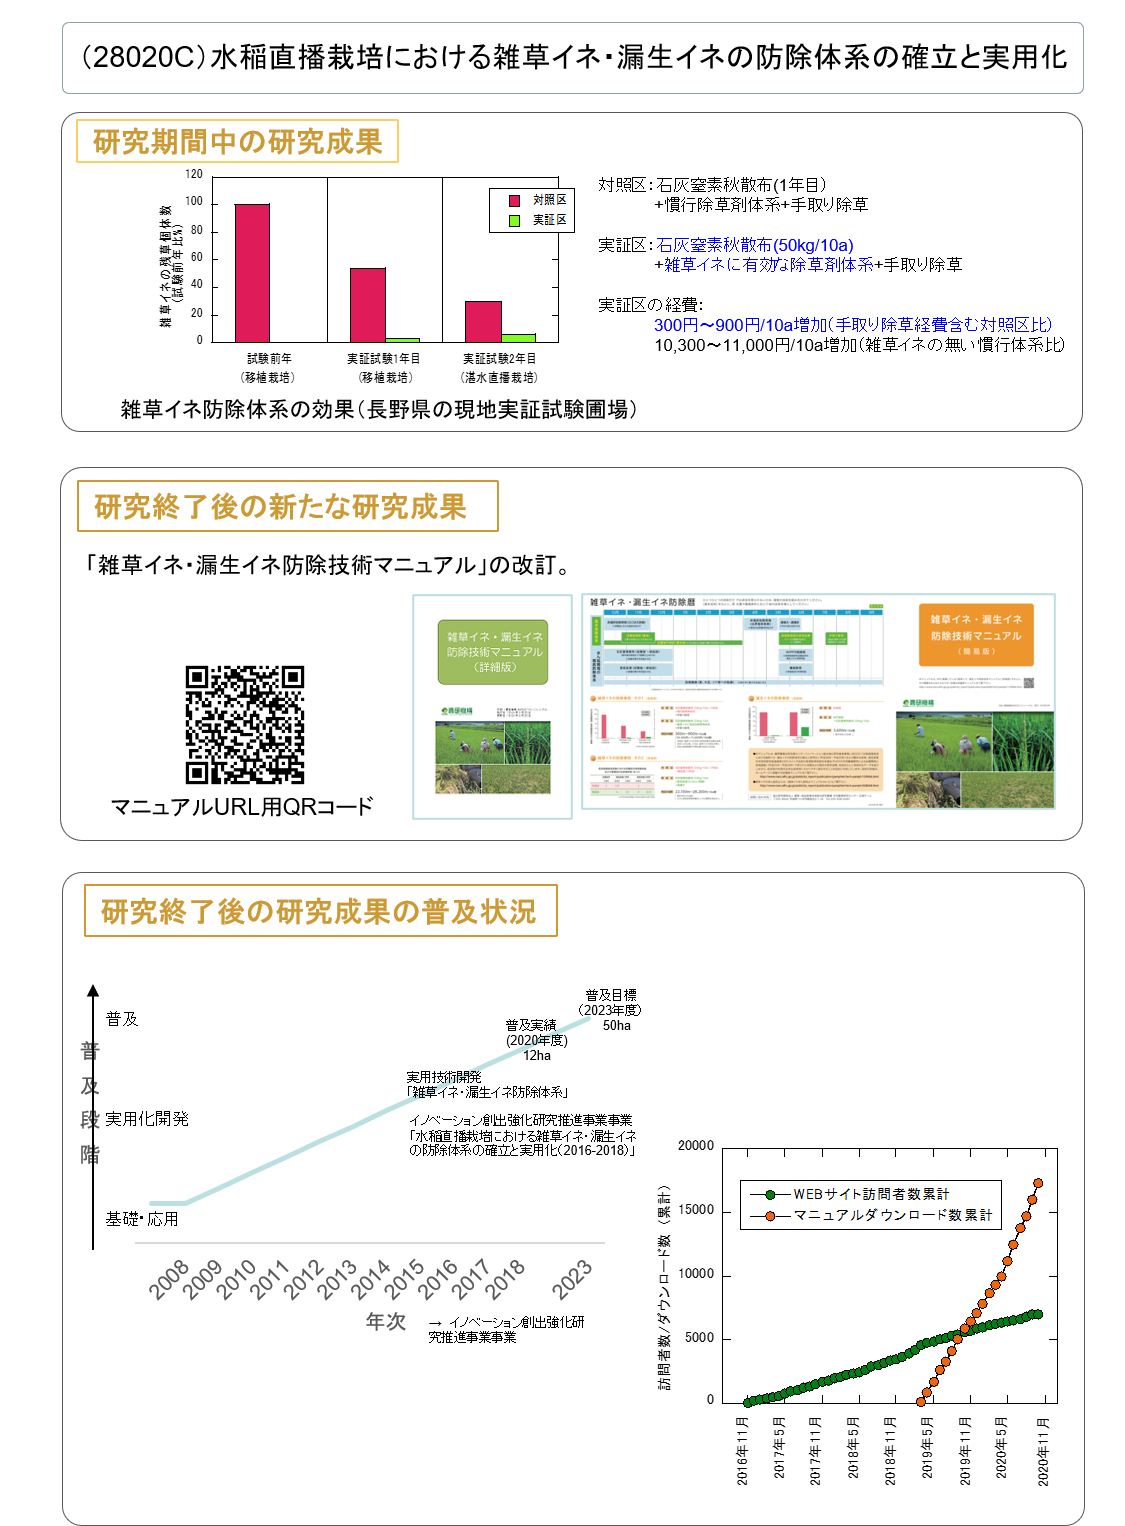 (28020C) 水稲直播栽培における雑草イネ・漏生イネの防除体系の確立と実用化